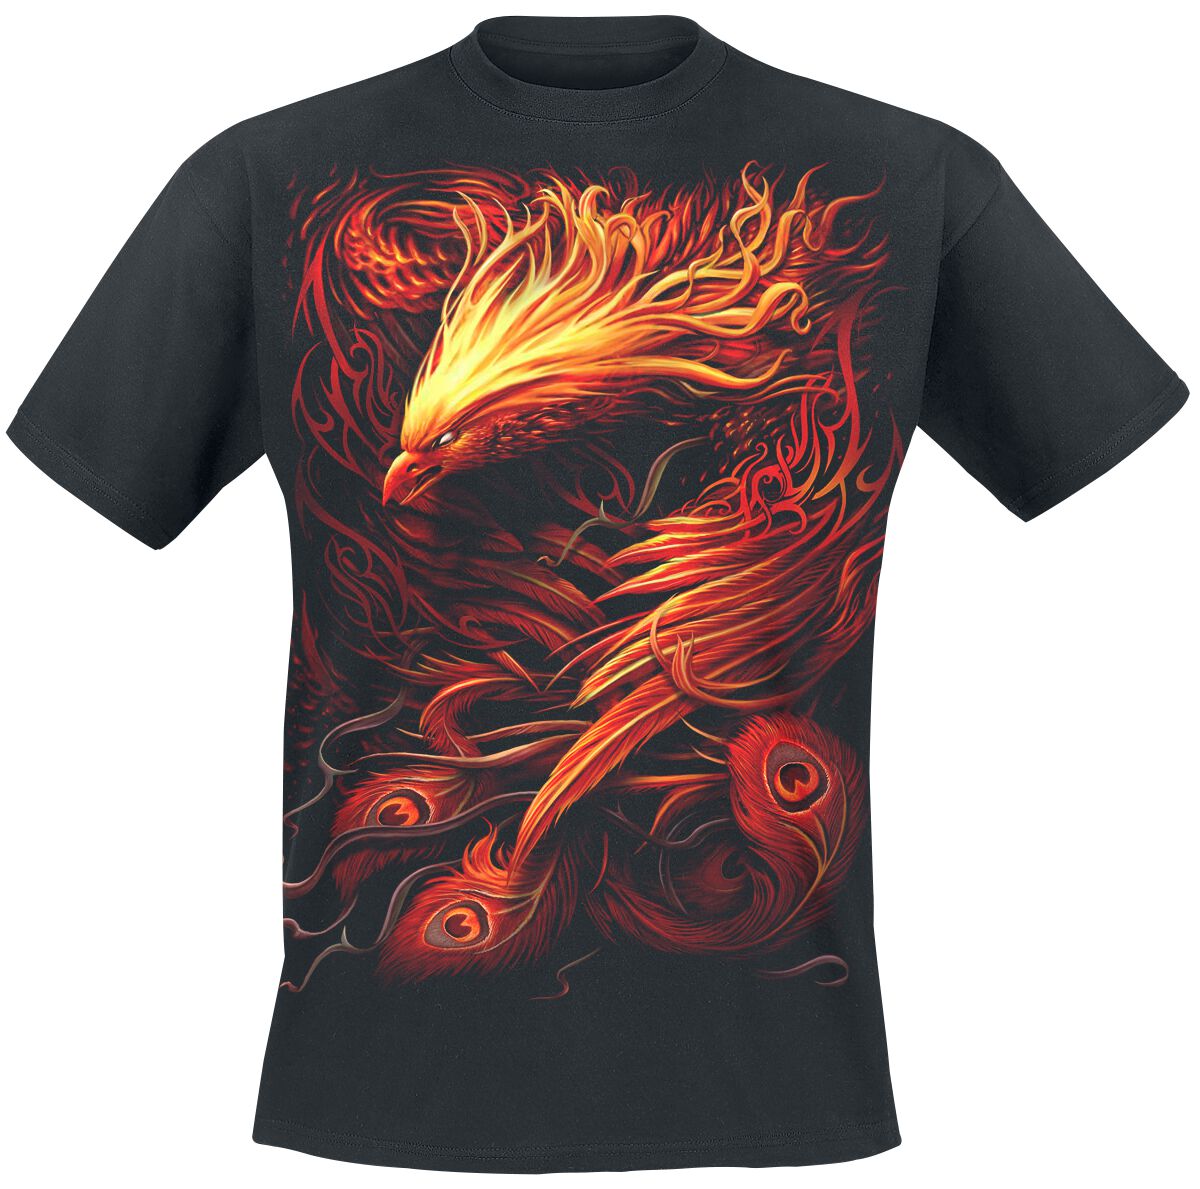 Spiral Phoenix Arisen T-Shirt schwarz in XL